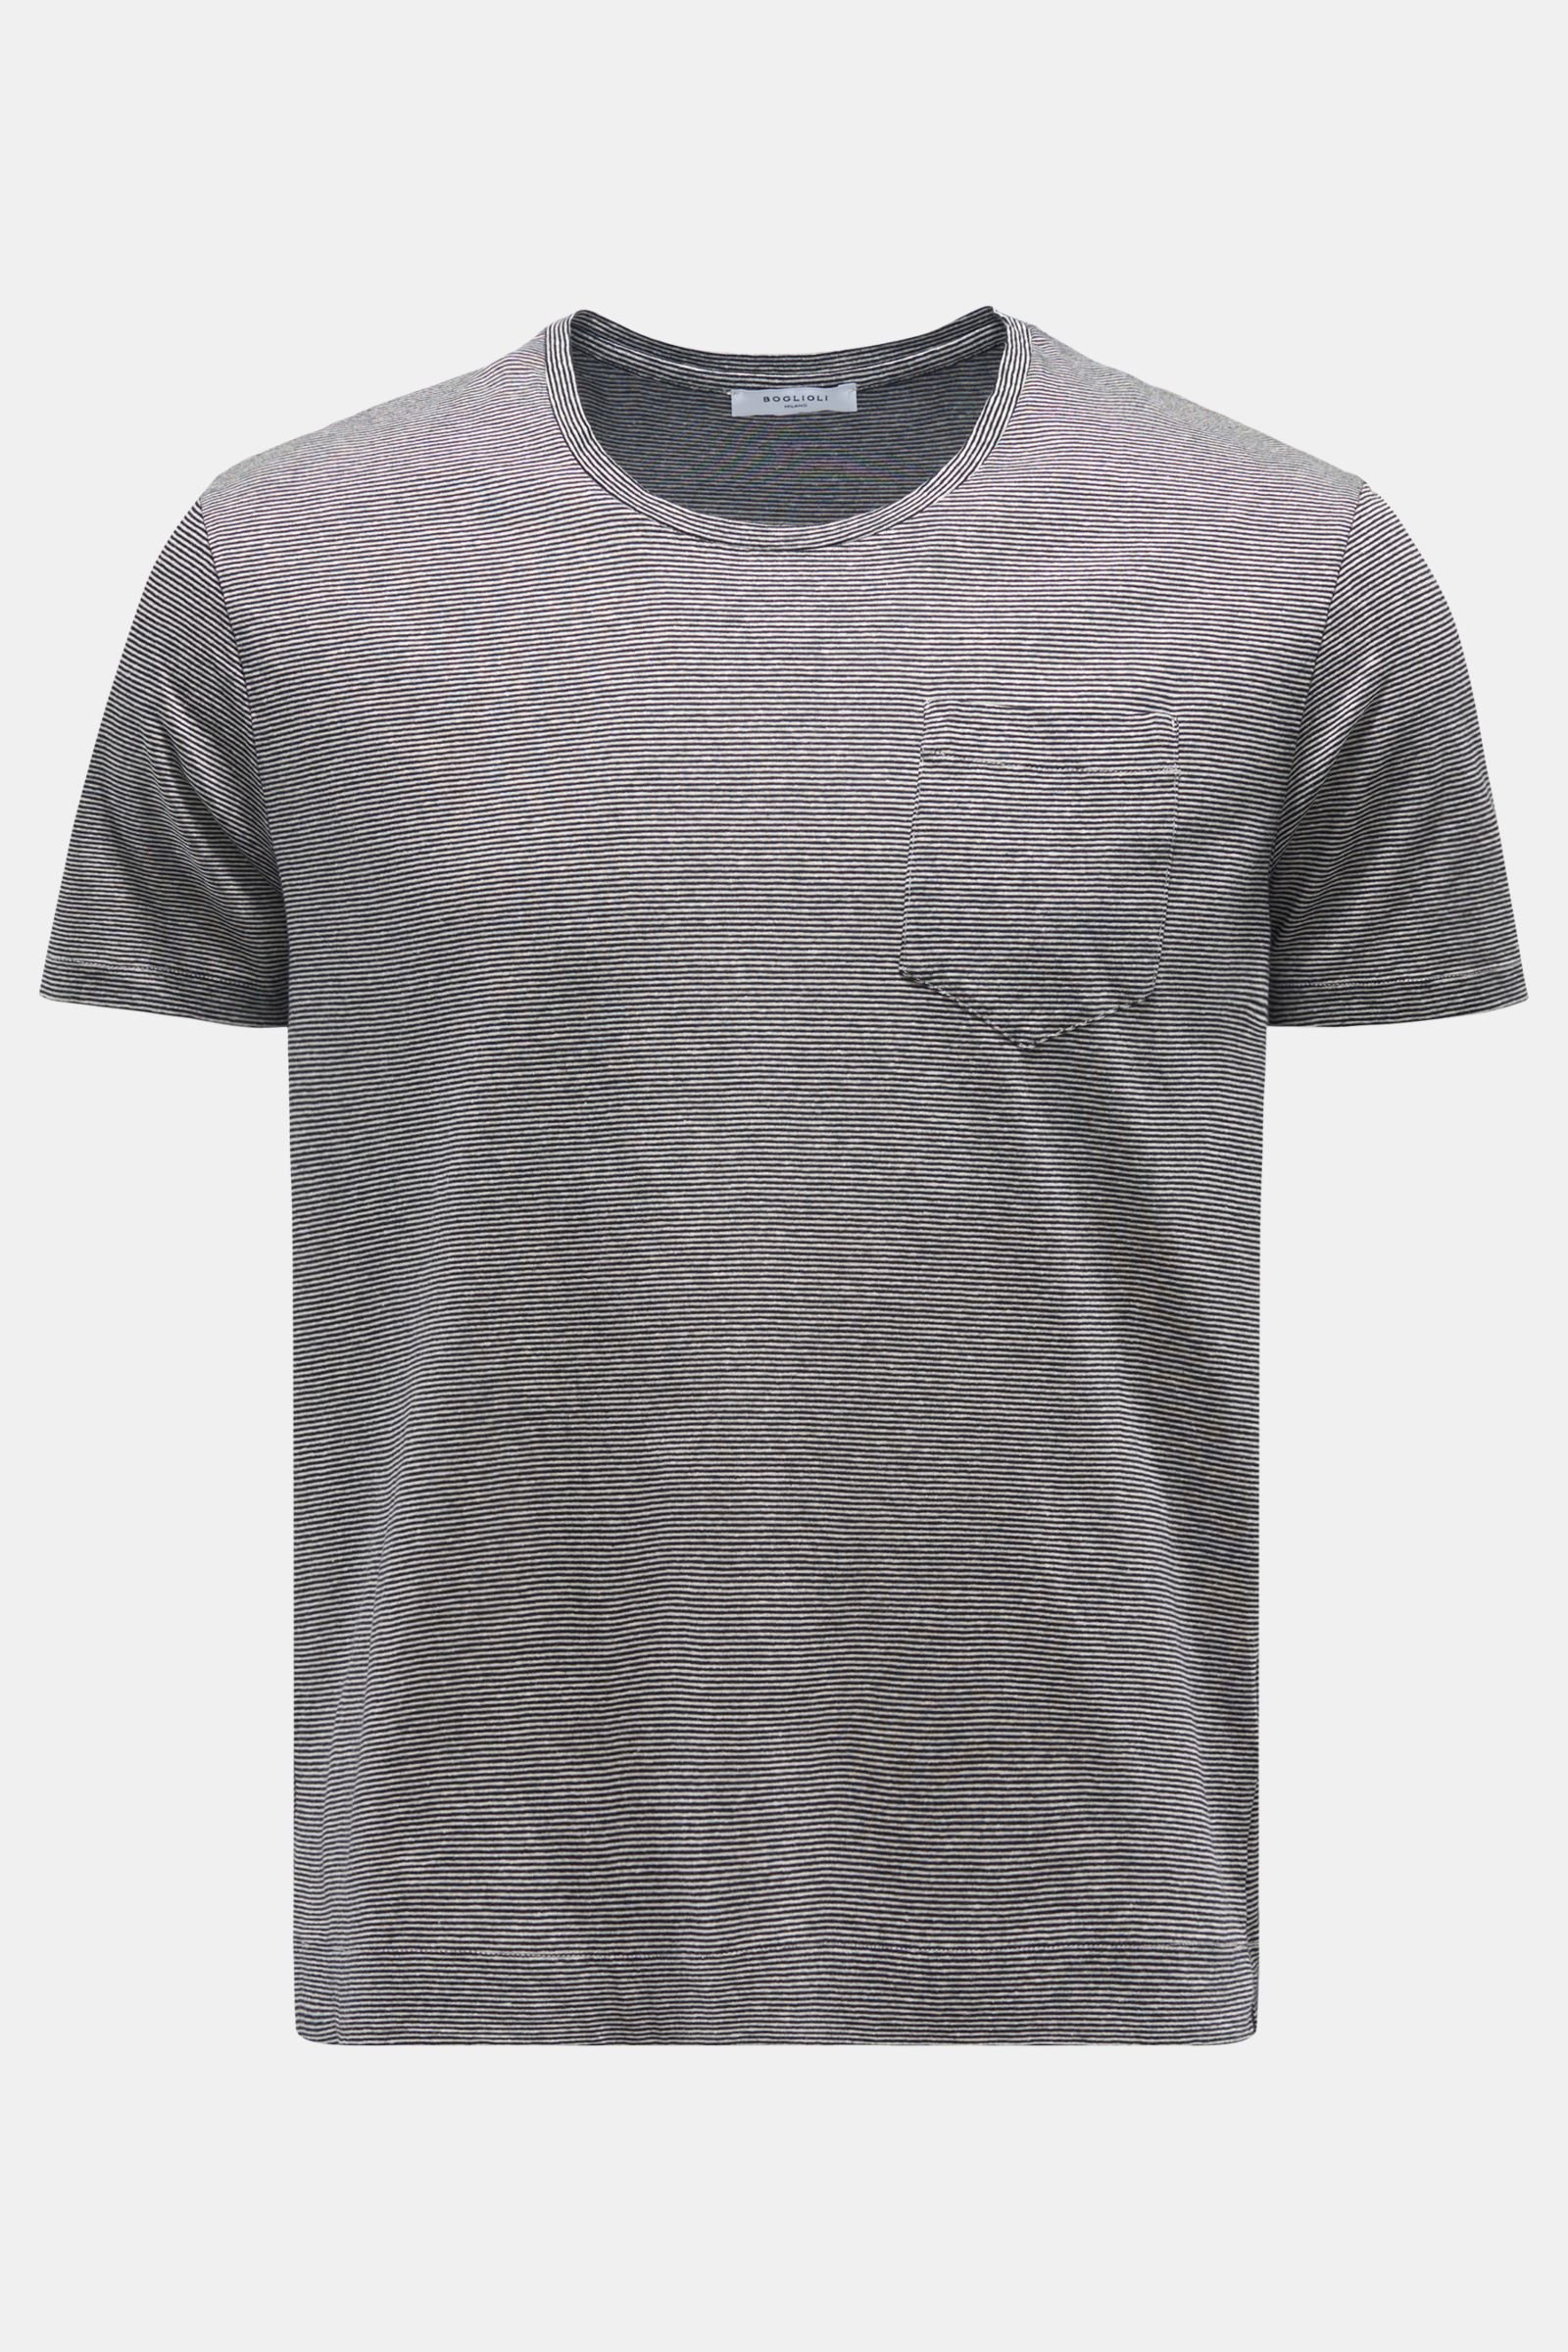 Rundhals-T-Shirt schwarz/weiß gestreift